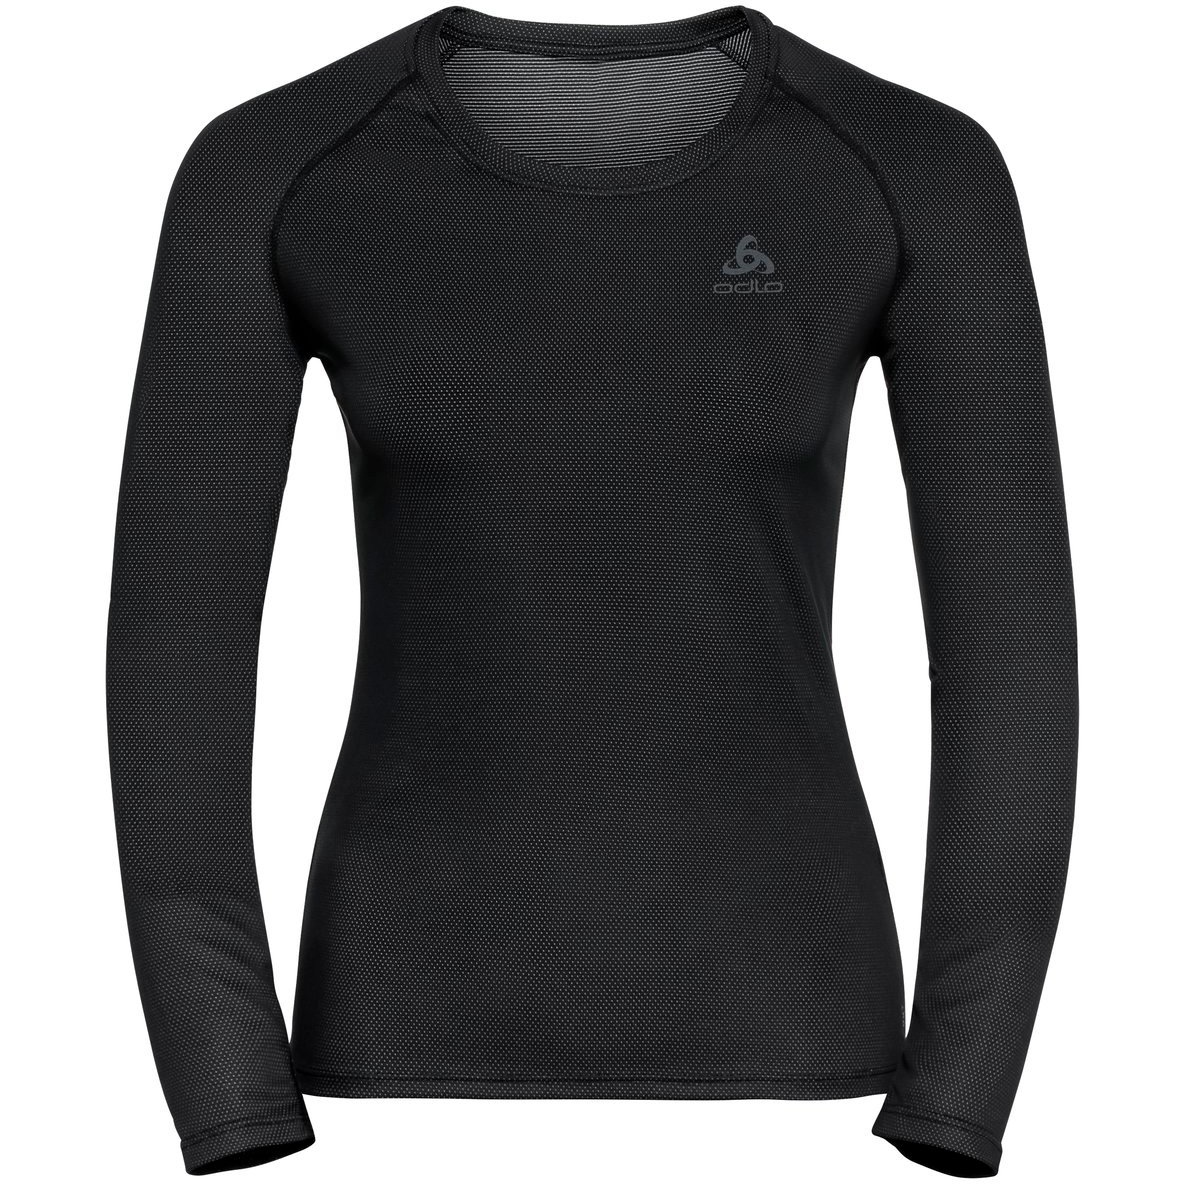 Produktbild von Odlo Active F-Dry Light Langarm-Unterhemd Damen - schwarz